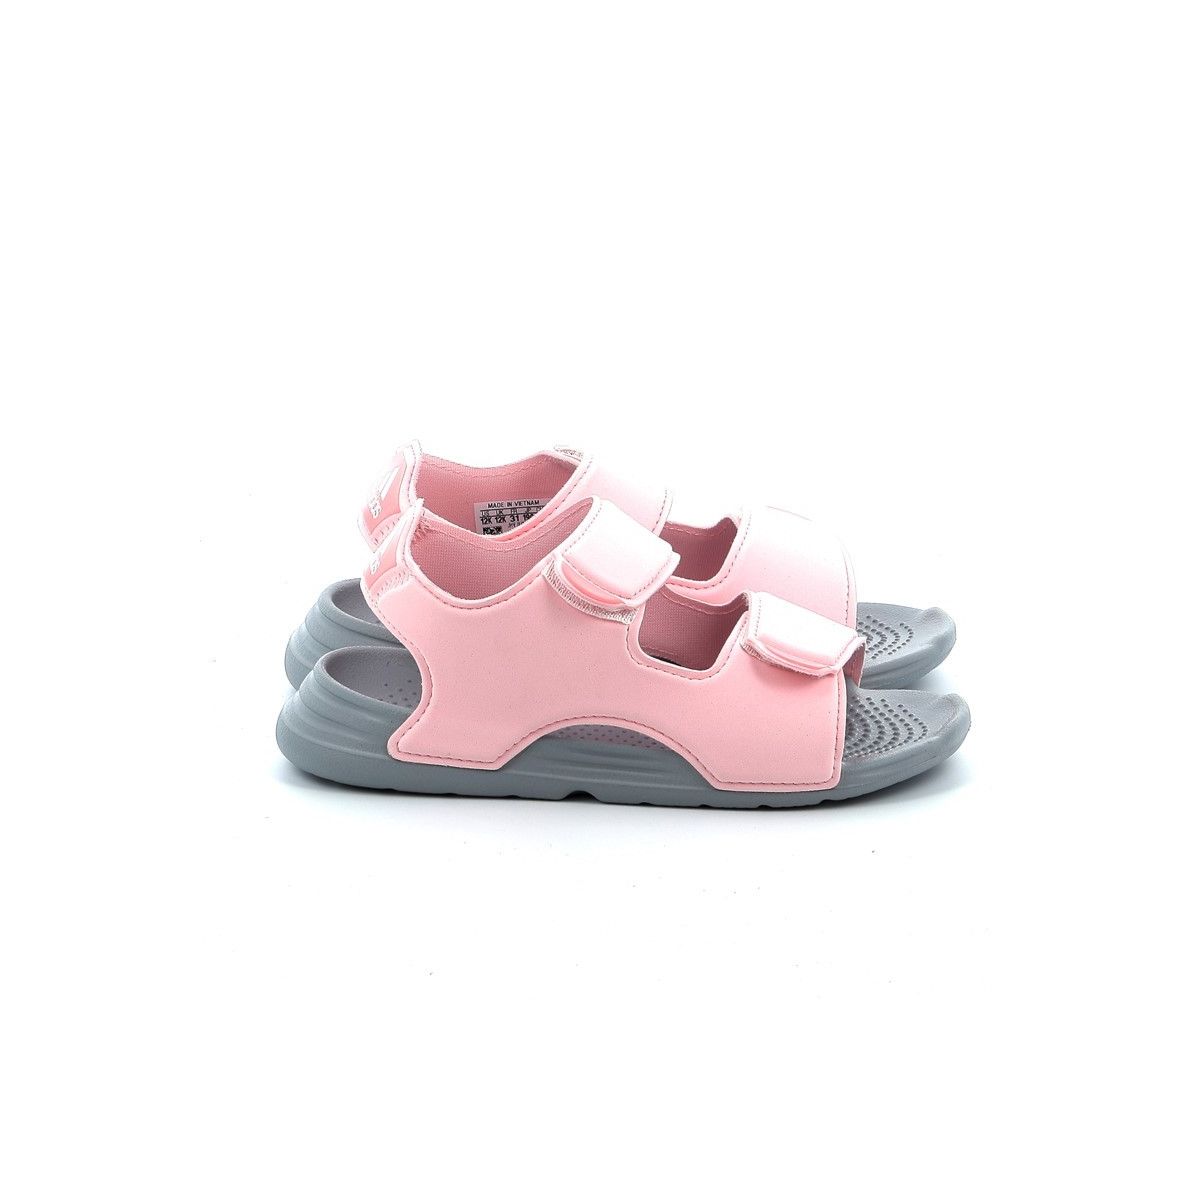 Παιδικό Πέδιλο Θαλάσσης για Κορίτσι Adidas Swim Sandals Χρώματος Ροζ FY8937